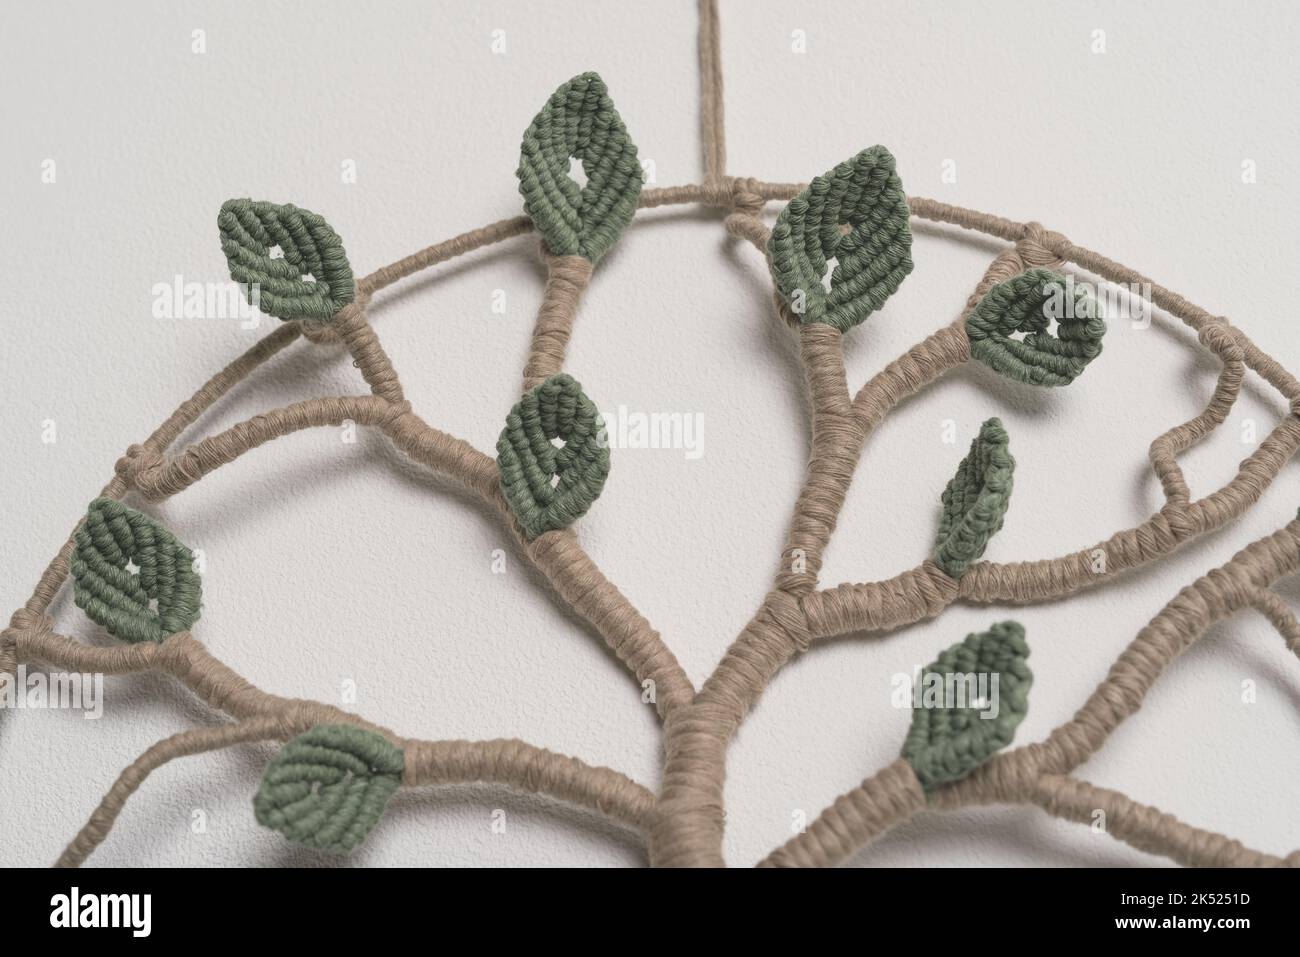 Albero di vita macrame fatto a mano parete decorazione foglie verdi e lunghe radici cotone stringa macramé nodo tecniche bianco fondo camera appeso parete Foto Stock